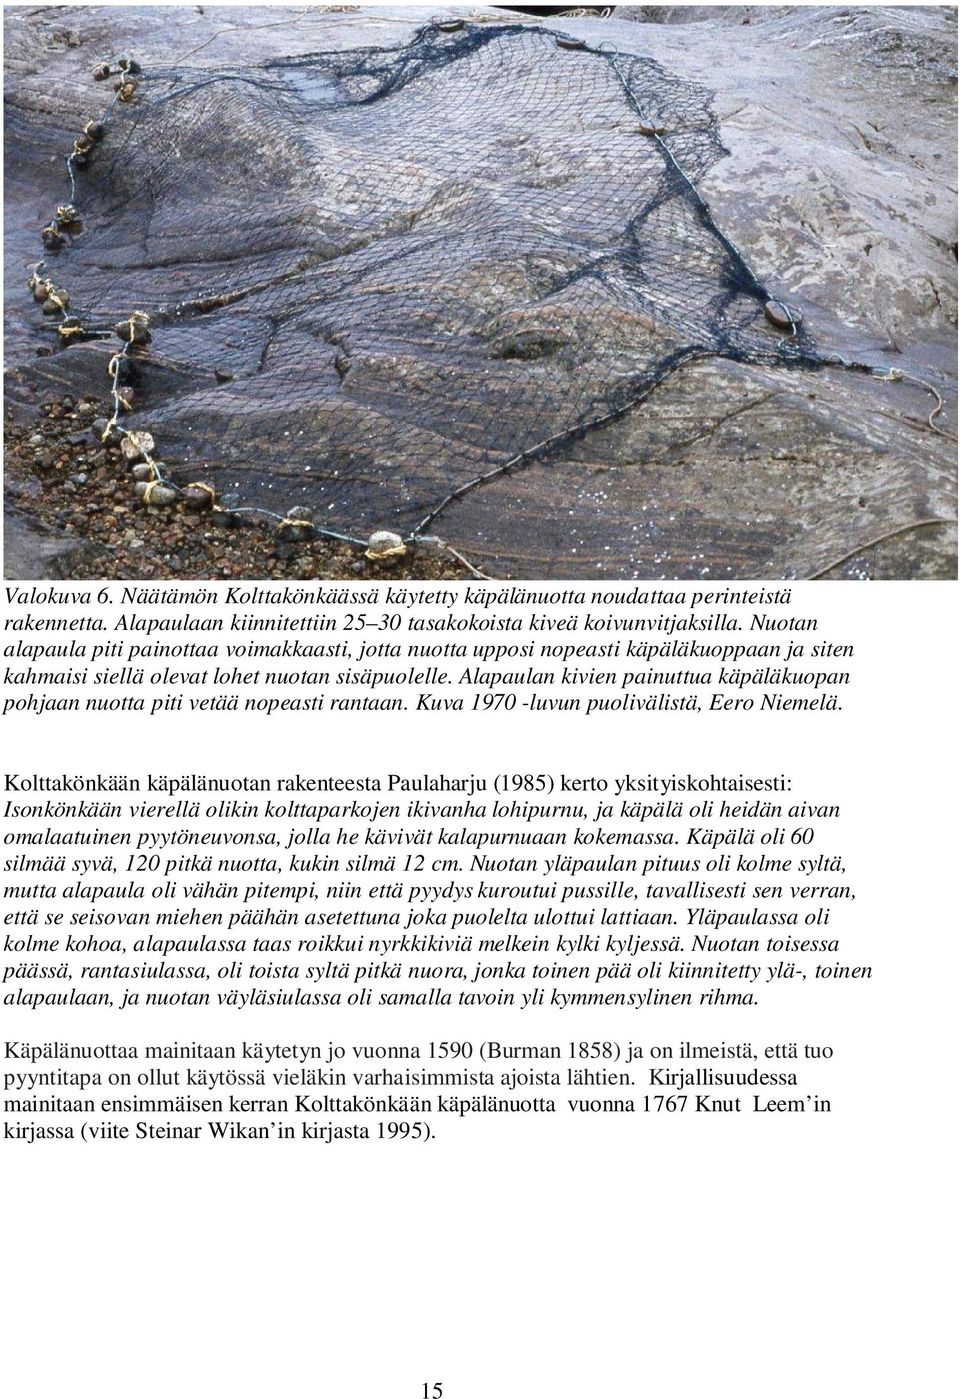 Alapaulan kivien painuttua käpäläkuopan pohjaan nuotta piti vetää nopeasti rantaan. Kuva 197 -luvun puolivälistä, Eero Niemelä.